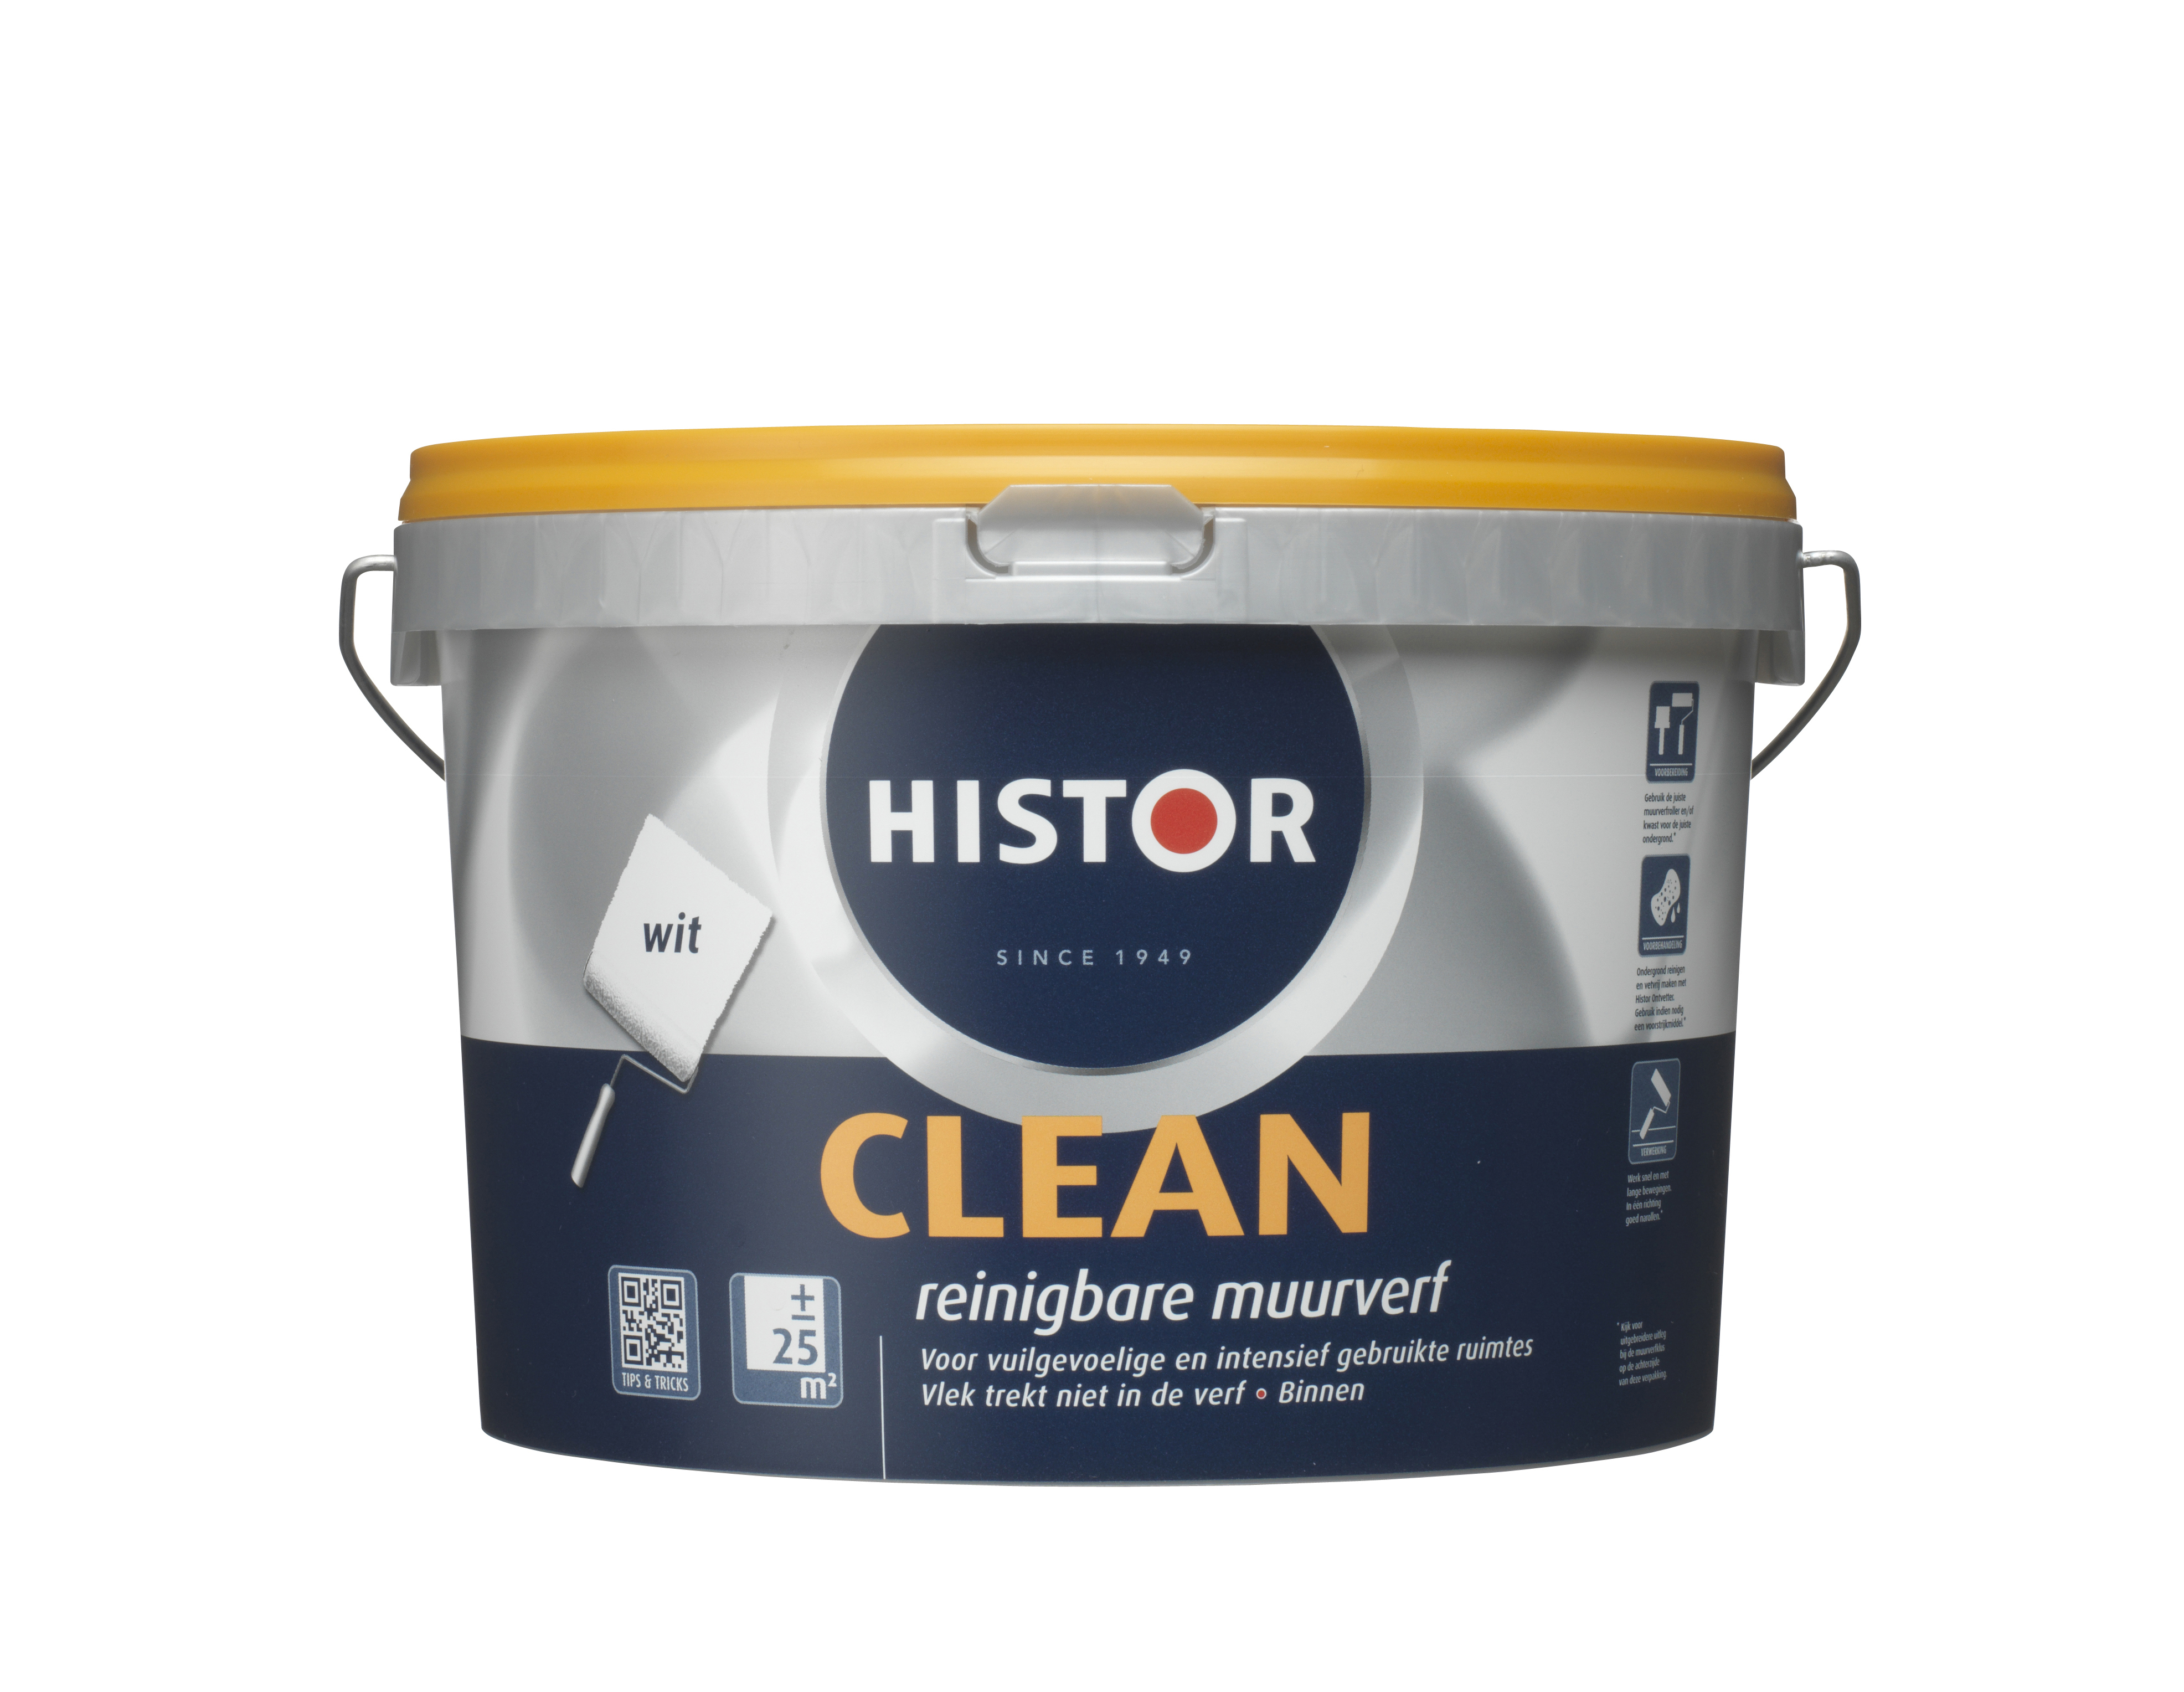 Histor Clean Muurverf - 2 5 liter - Wit